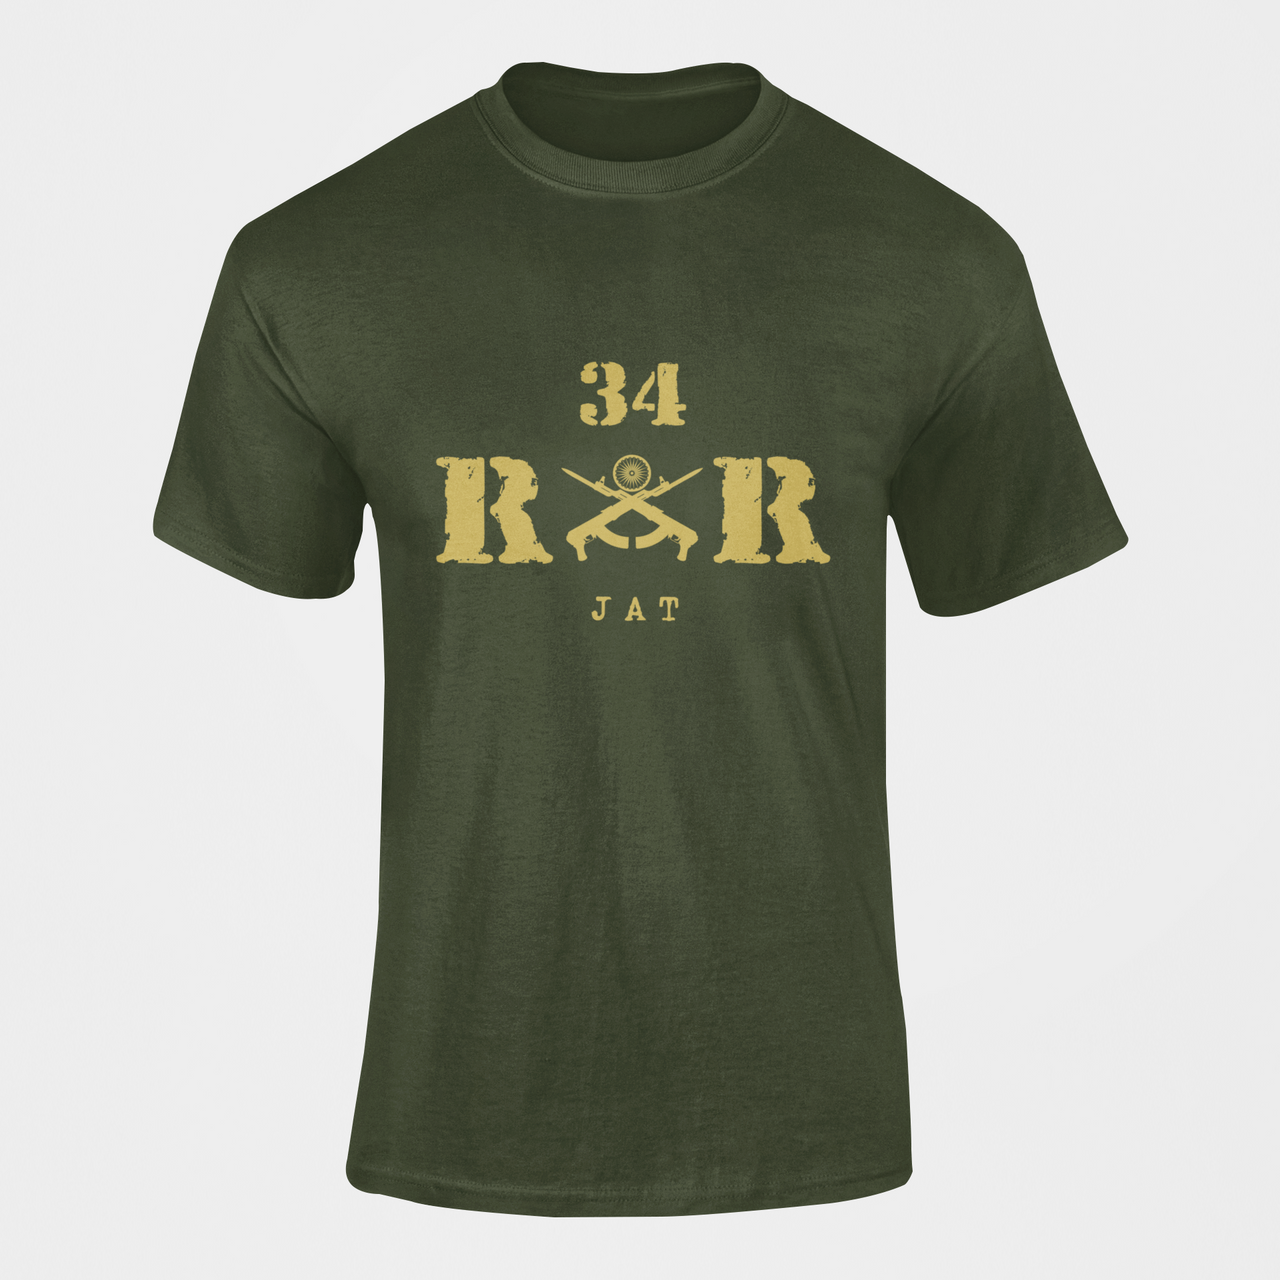 Rashtriya Rifles T-shirt - 34 RR Jat (Men)